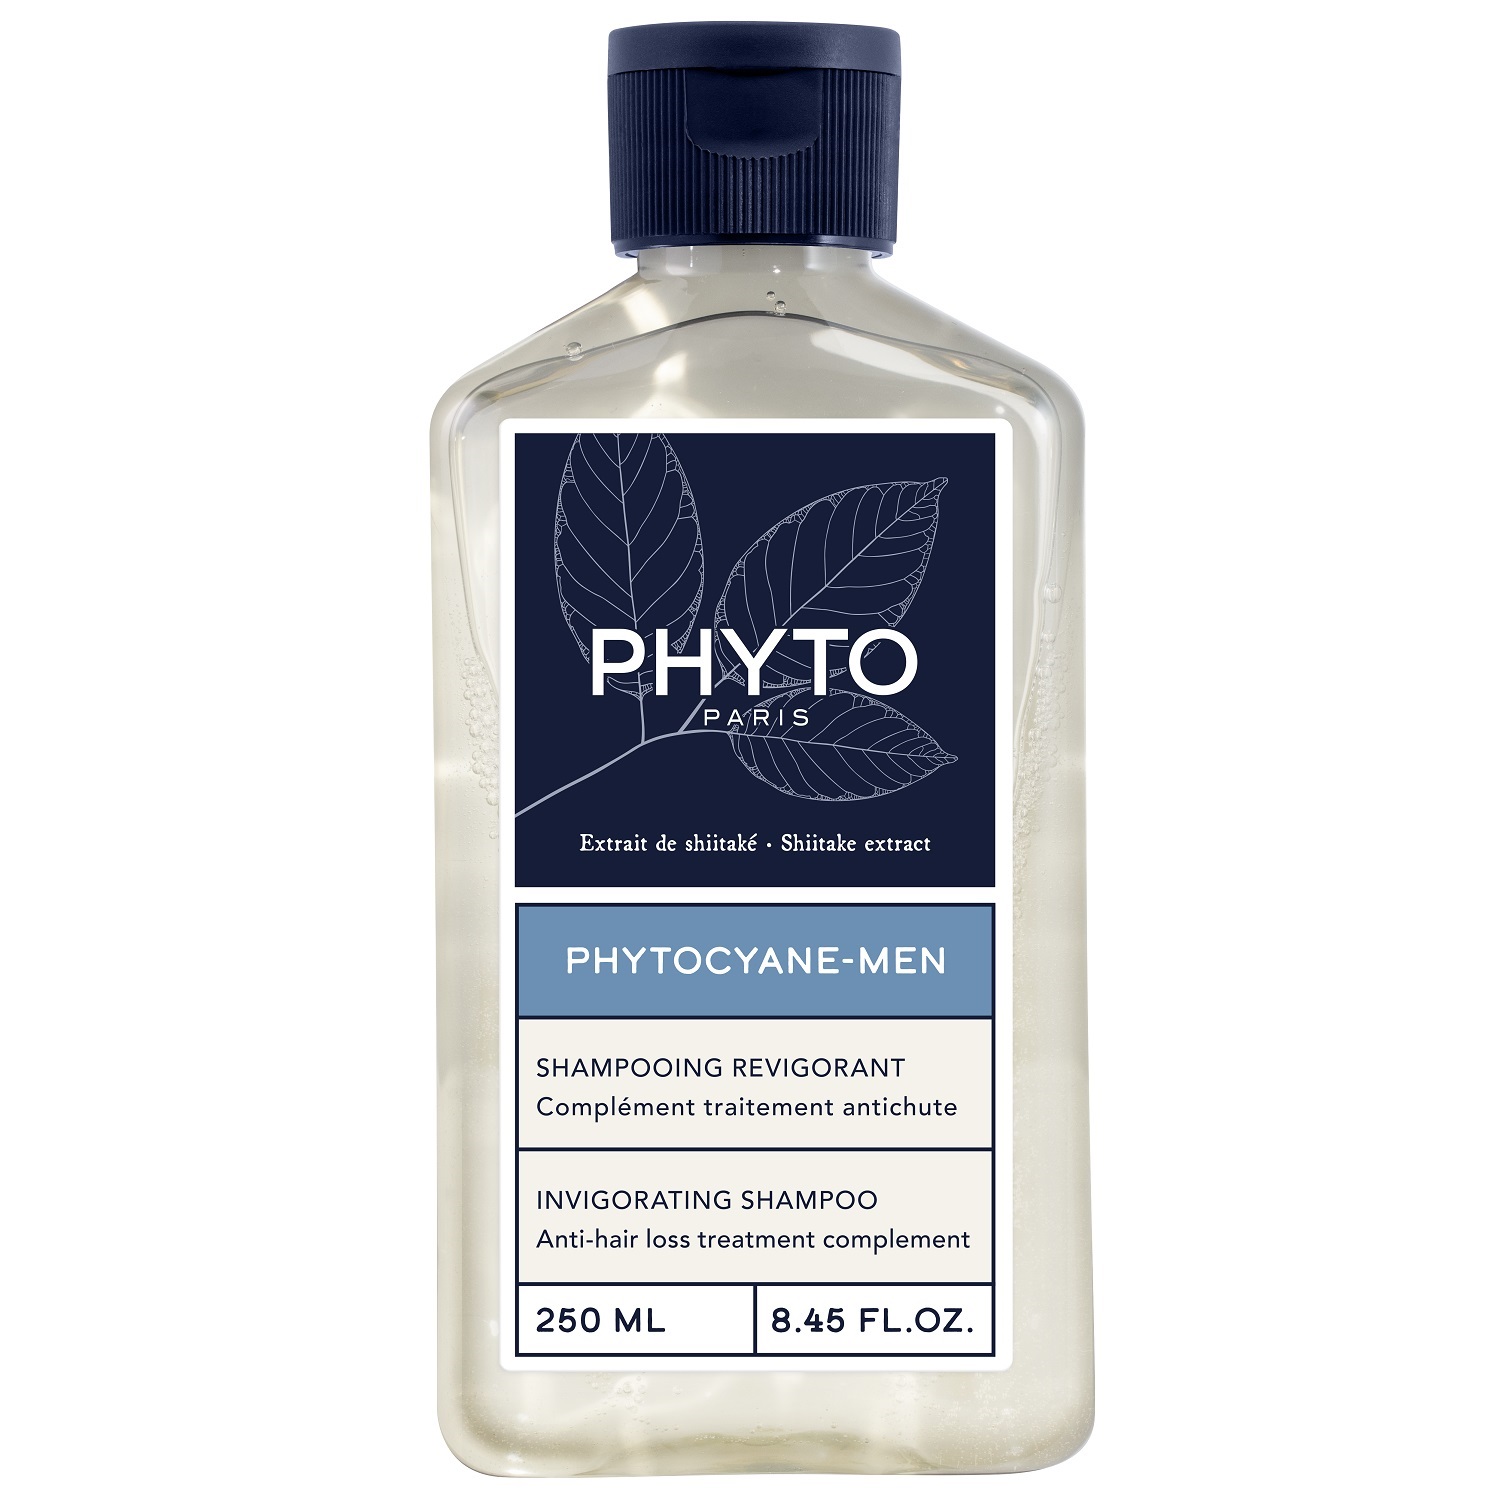 Phyto Мужской укрепляющий шампунь для волос, 250 мл (Phyto, Phytocyane) phyto укрепляющий шампунь фитоциан 250 мл phyto phytocyane